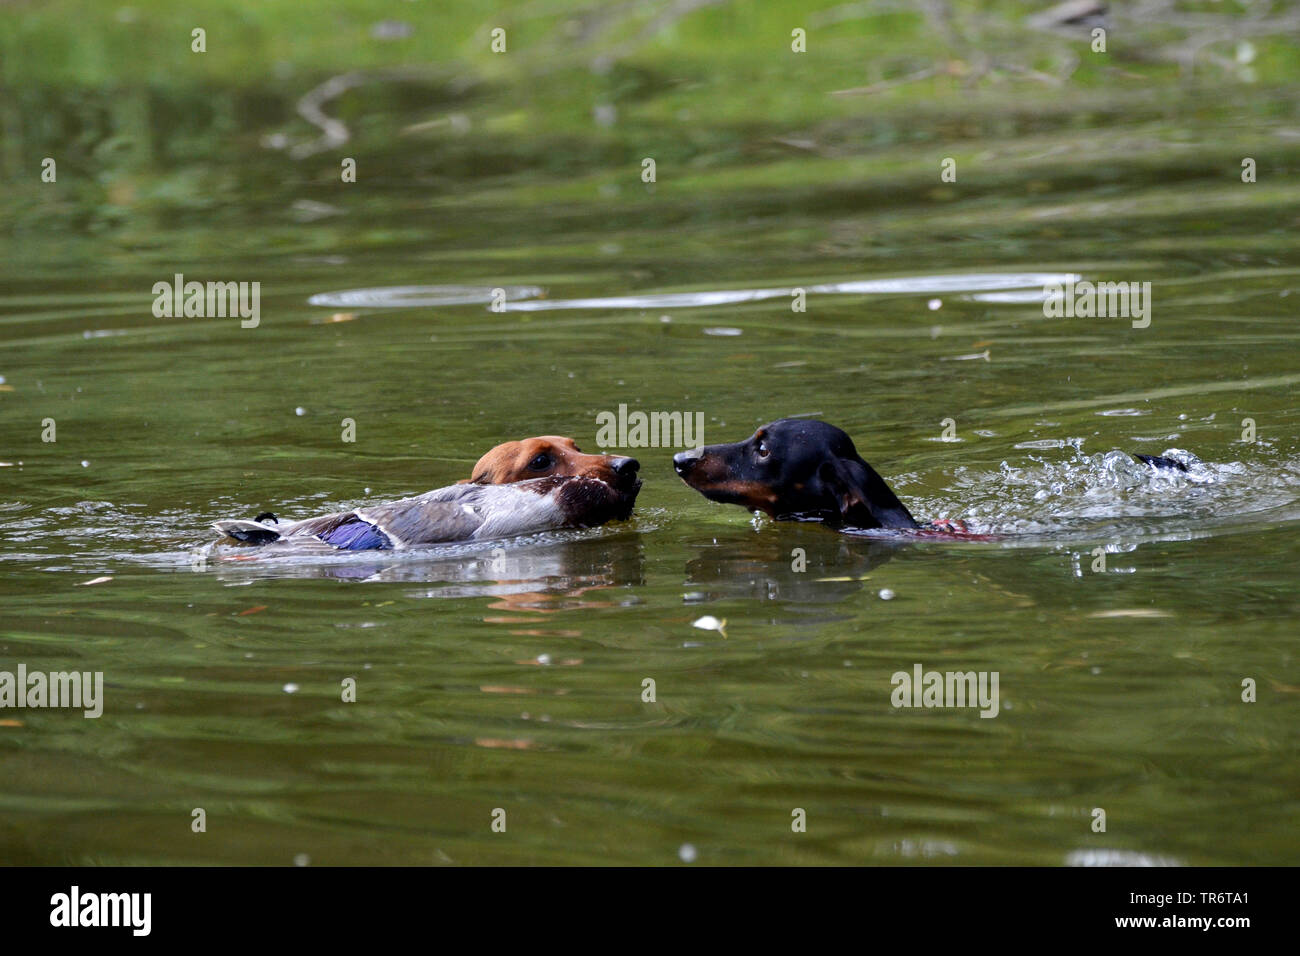 Kurzhaarige Dackel, Kurzhaarige wurst Hund, Haushund (Canis lupus f. familiaris), zwei Dackel schwimmen und Abrufen einer Ente, Deutschland Stockfoto